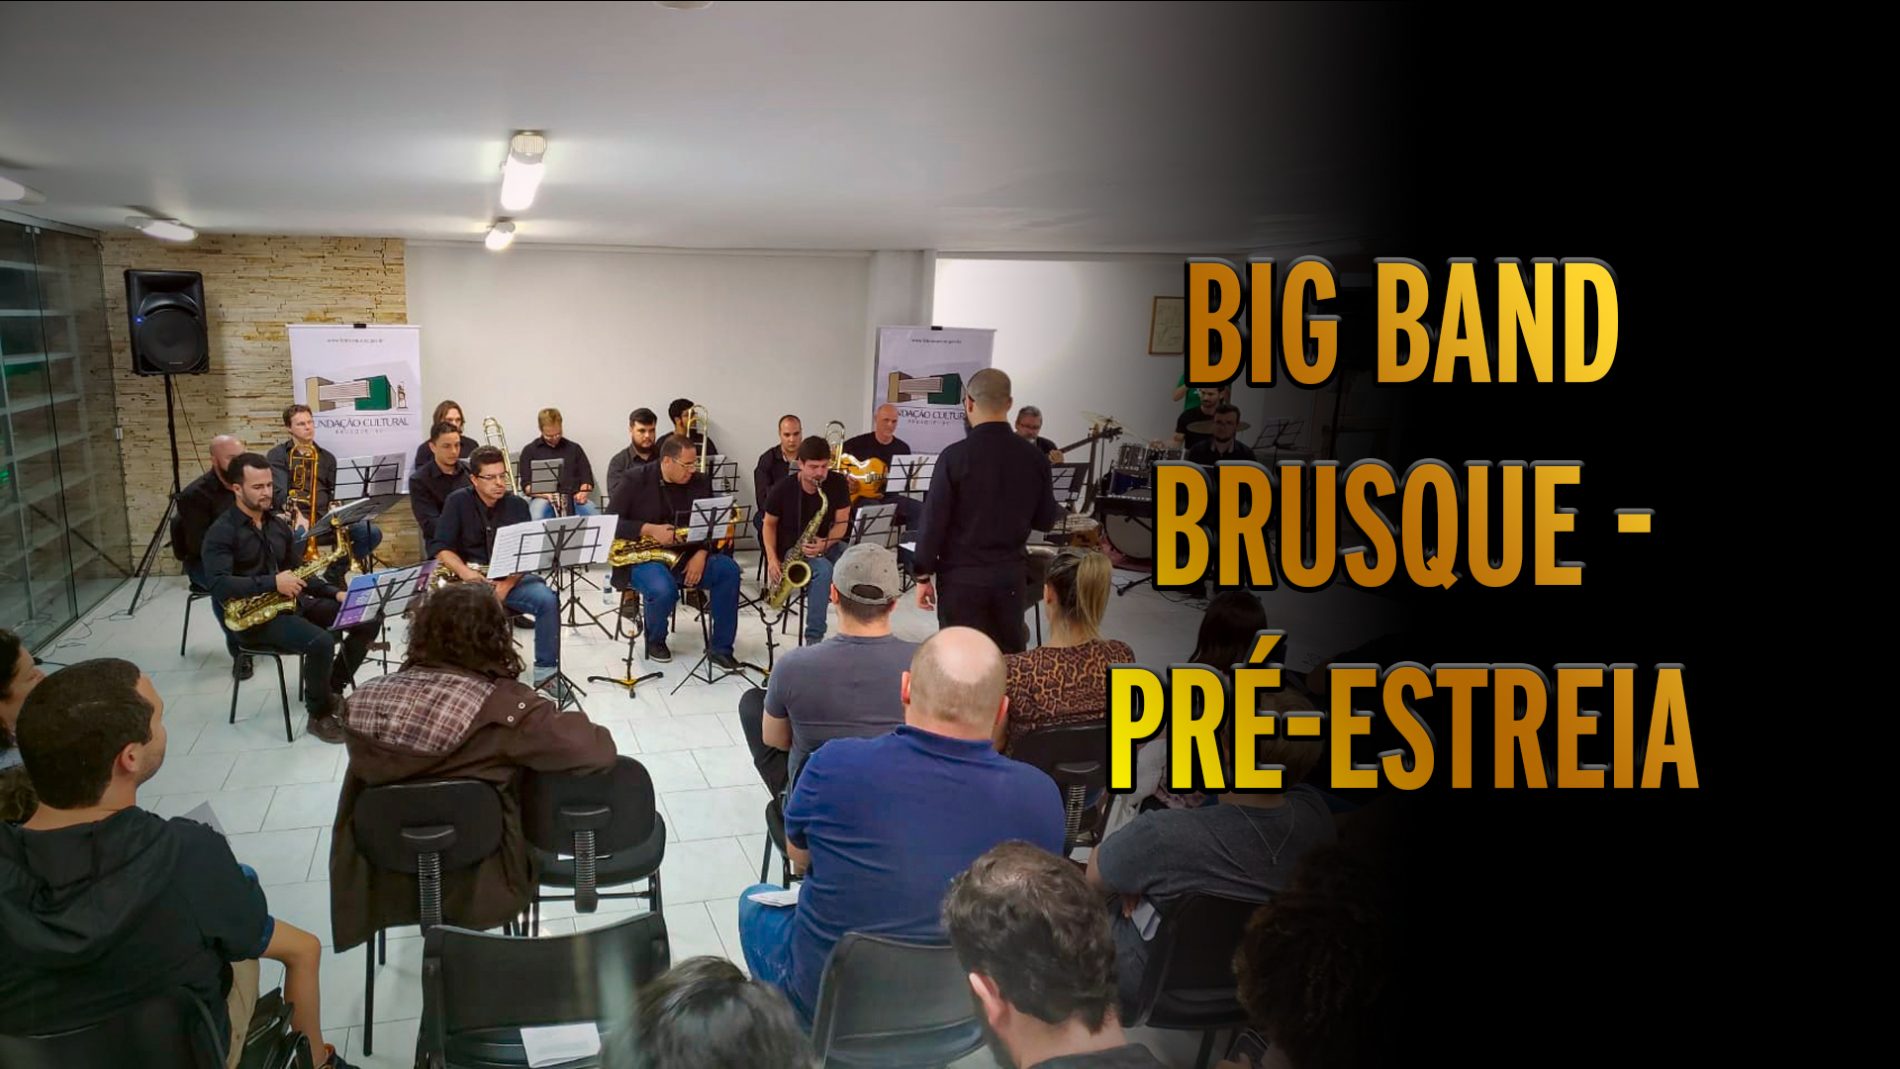 Pré-estreia da Big Band Brusque